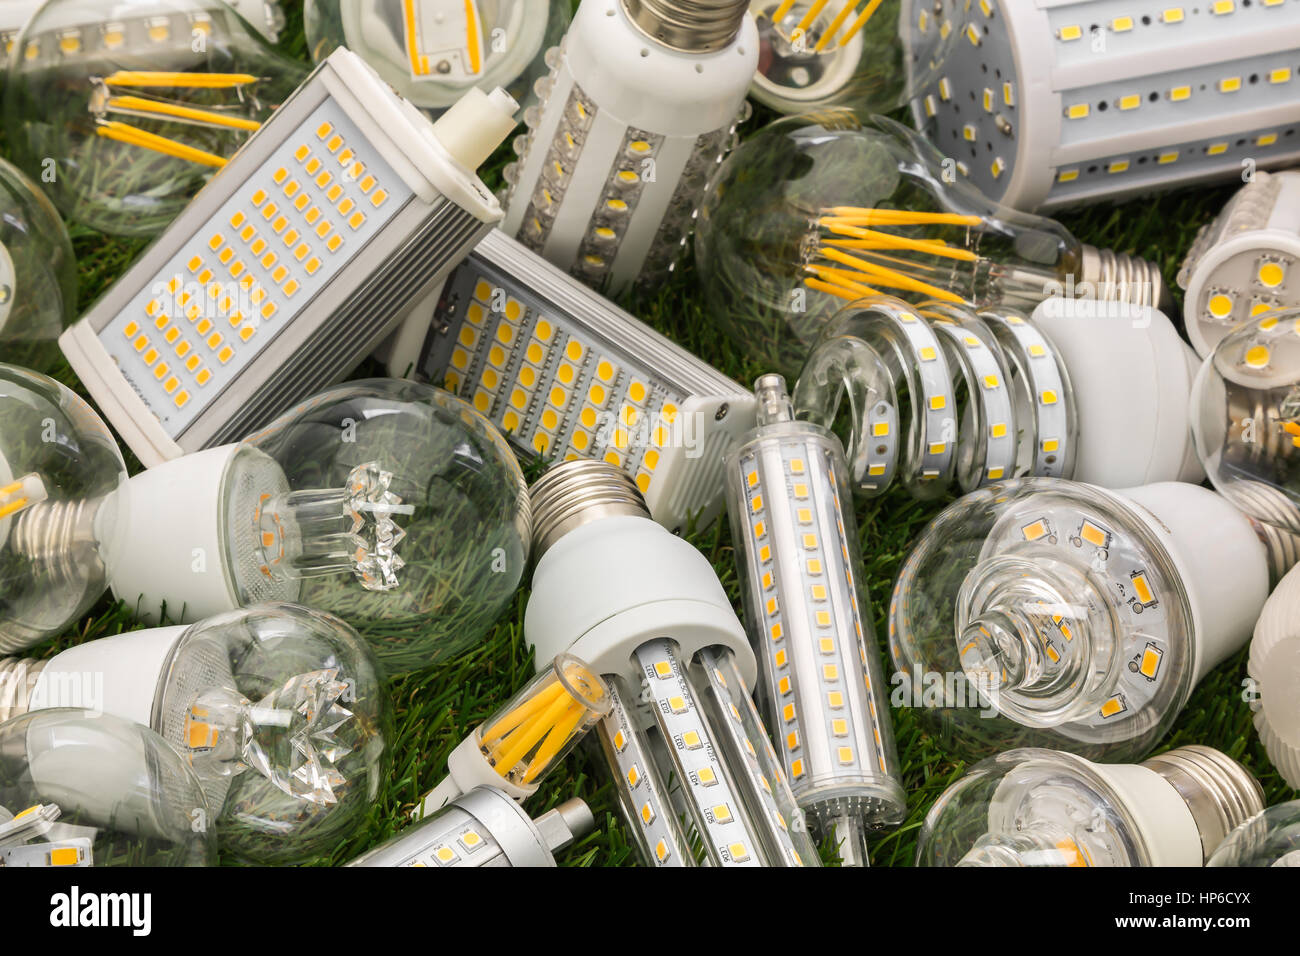 große Familie von Eco LED-Lampen verschiedener Typen auf dem grünen Rasen Stockfoto